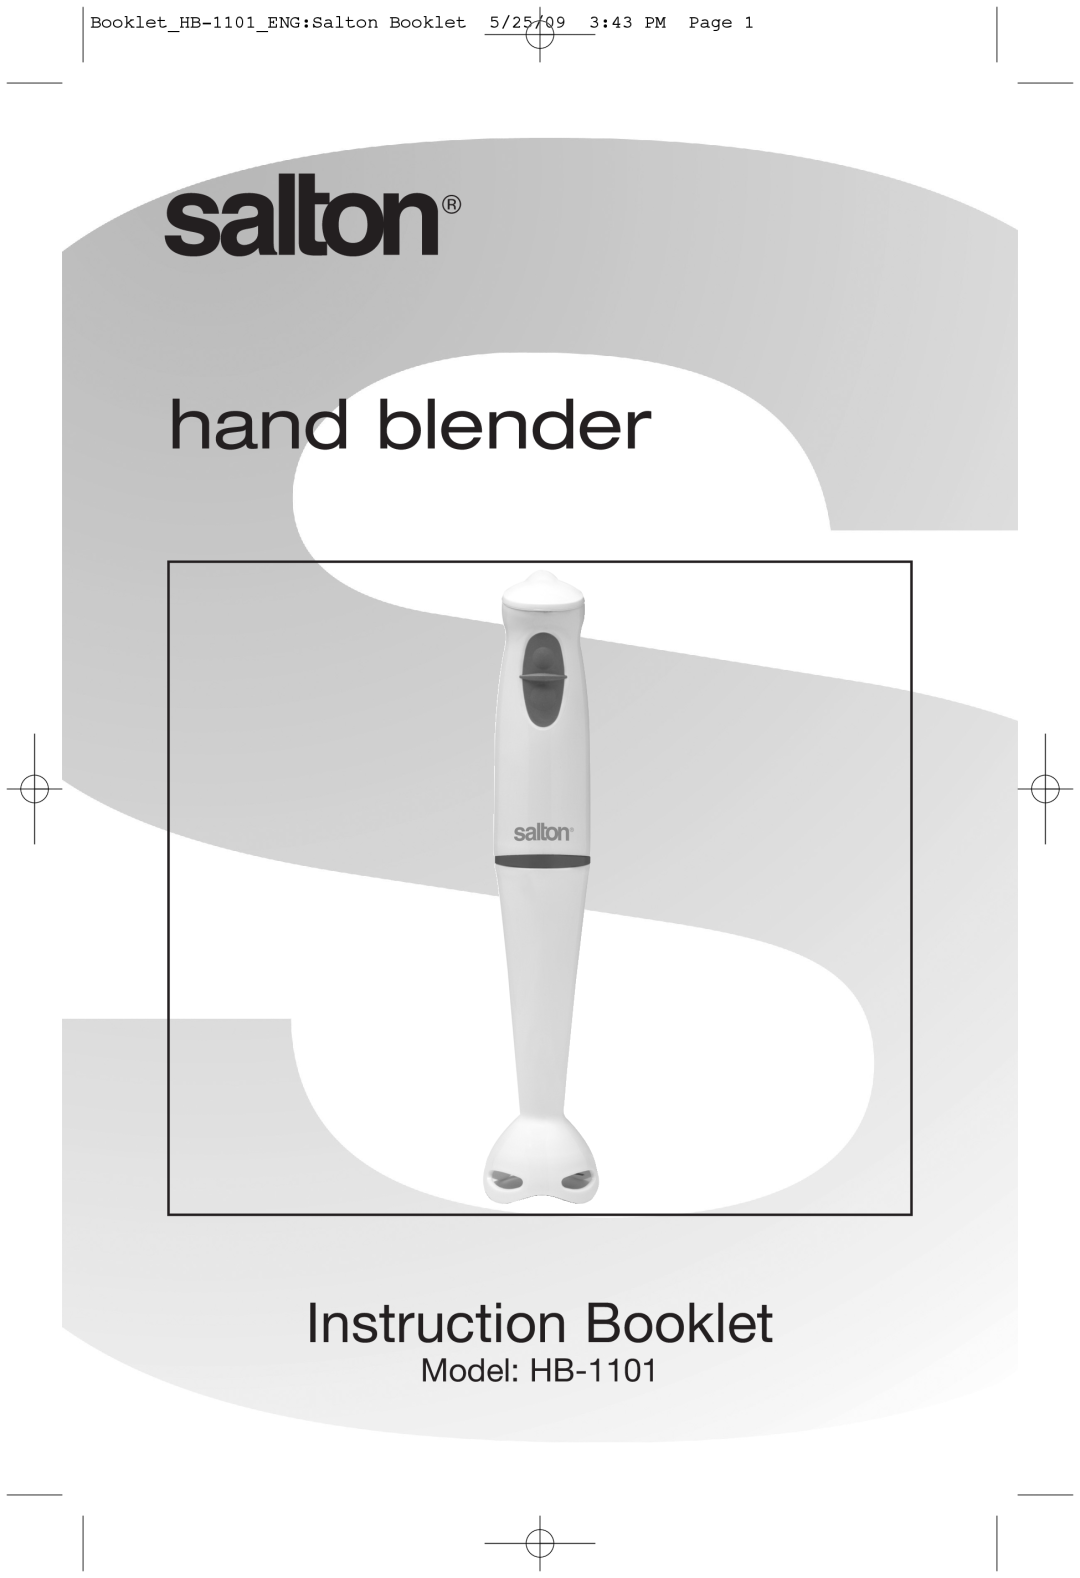 Salton manual hand blender, Instruction Booklet, Model HB-1101, BookletHB-1101ENGSalton Booklet 5/25/09 343 PM Page 